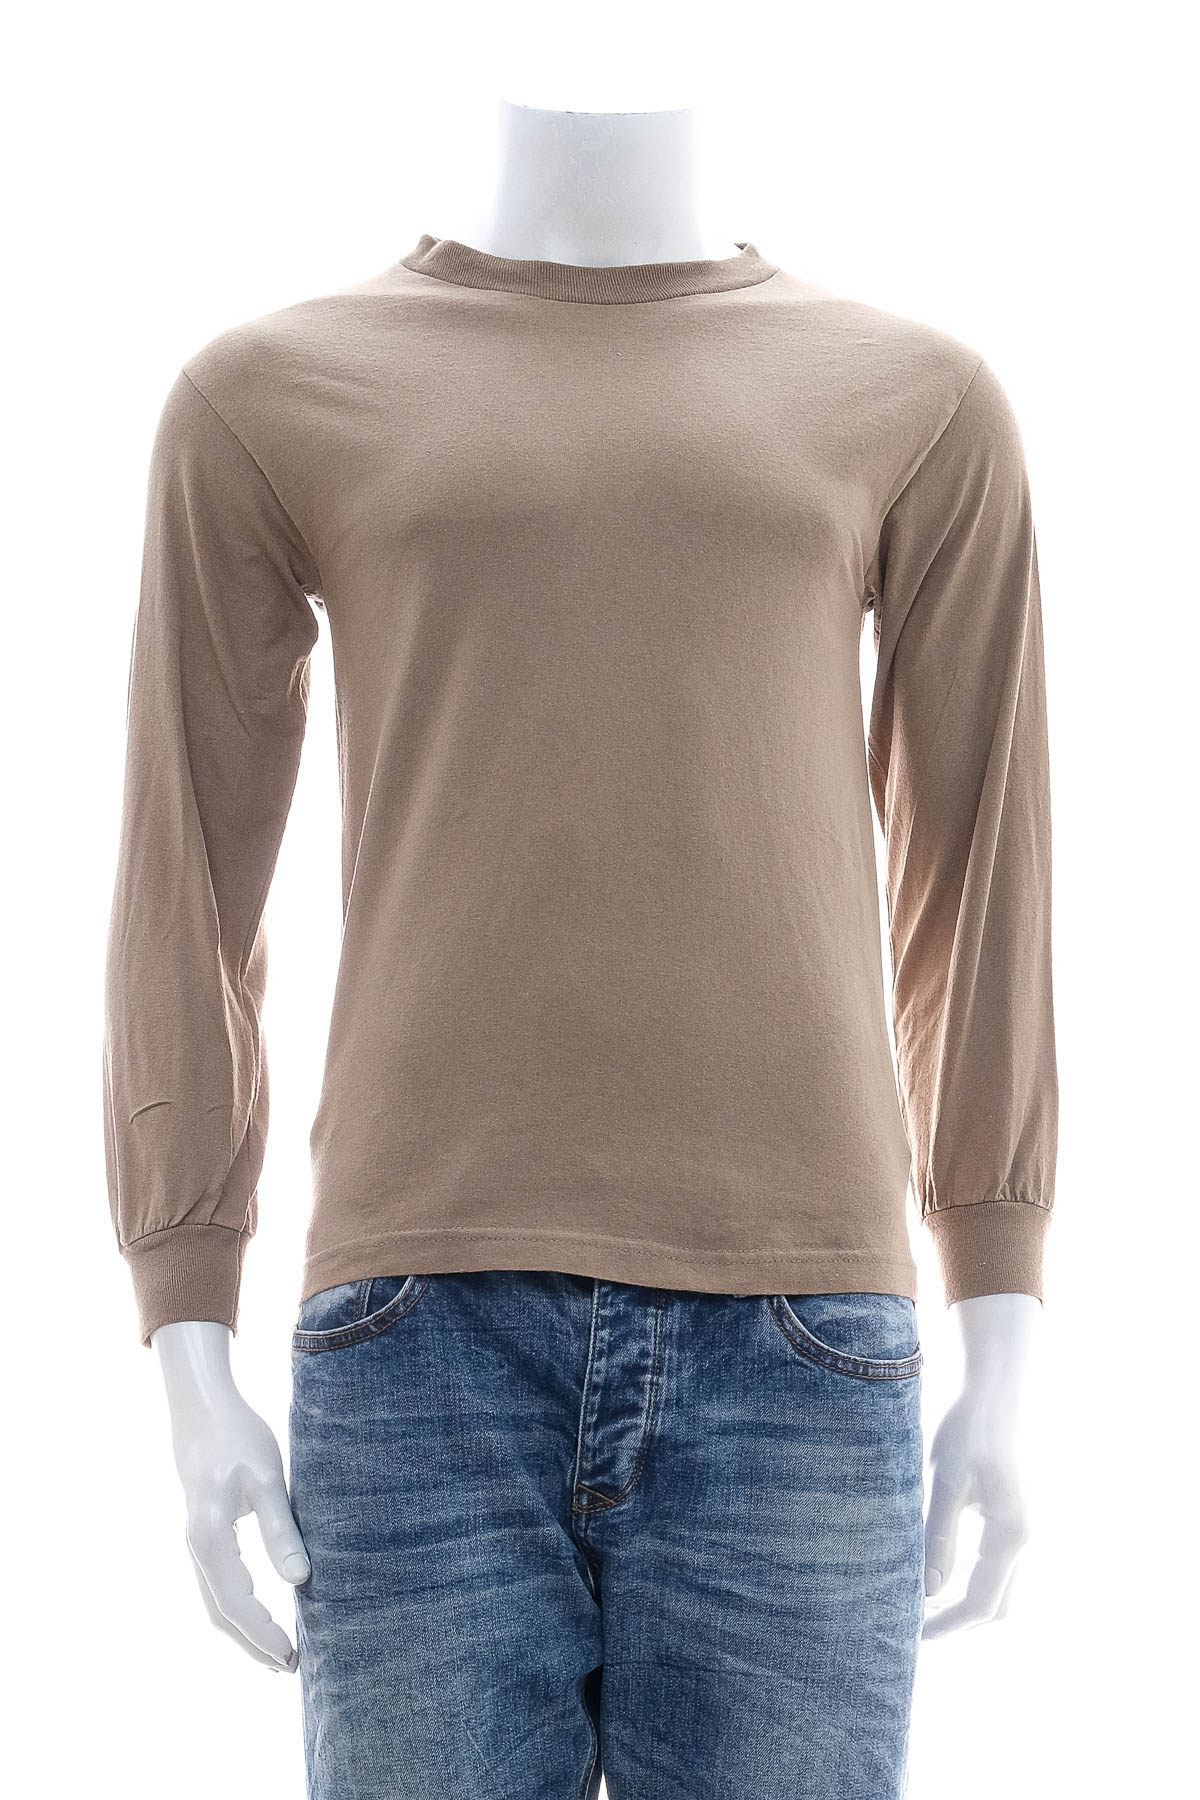 Ανδρική μπλούζα - ALSTYLE APPAREL & ACTIVE WEAR - 0